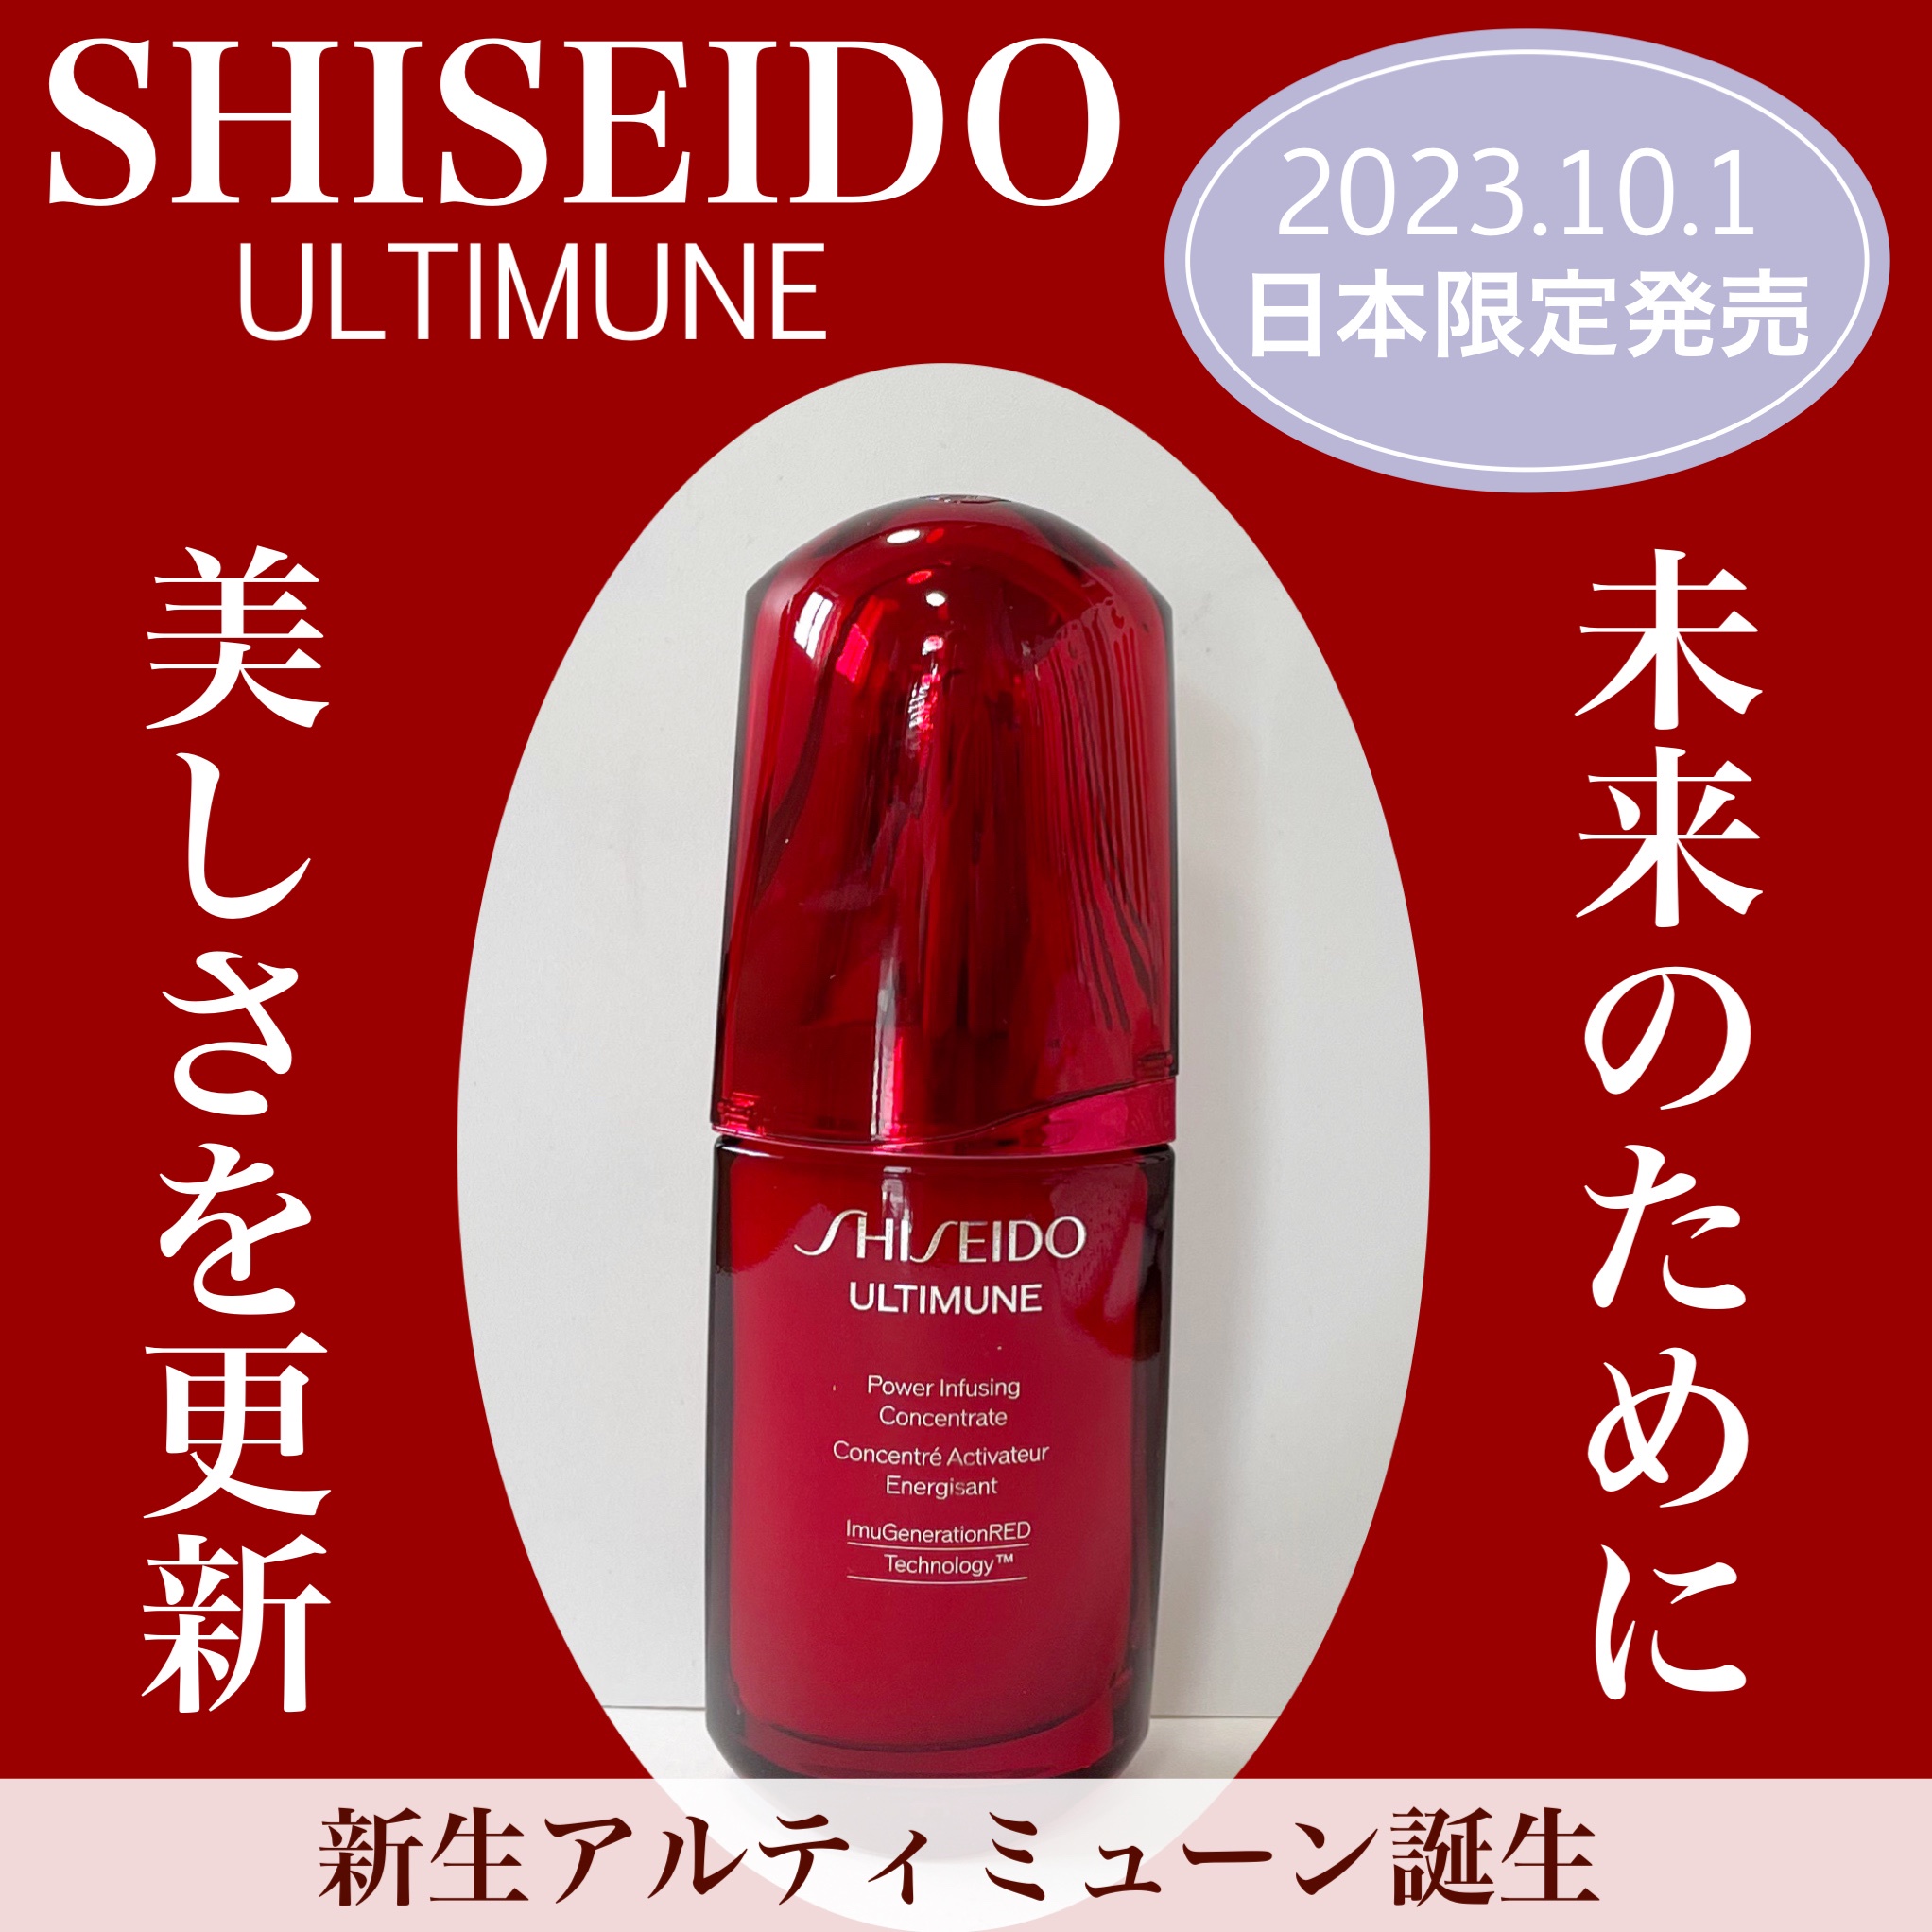 SHISEIDO / アルティミューン パワライジング コンセントレート III 